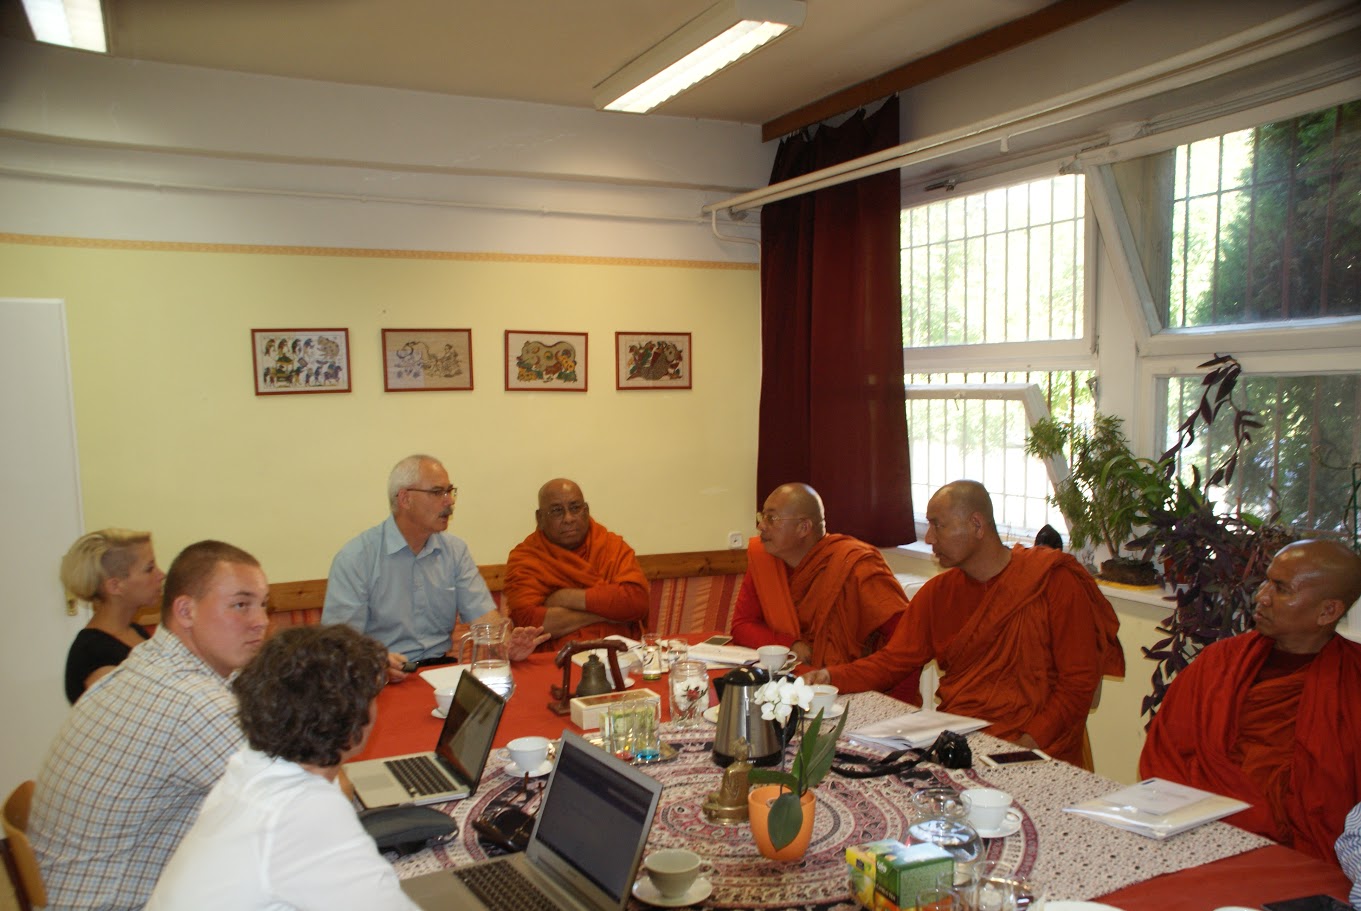 Együttműködési szándéknyilatkozatot írt alá a tiszteletreméltó Sitagu Sayadaw a burmai Sitagu International Buddhist Academy (Sitagu Nemzetközi Buddhista Akadémia: <a href="http://on.fb.me/1MozeYA">http://on.fb.me/1MozeYA</a>) részéről és Jelen János, a Főiskola rektora. MoU of Cooperation between Sitagu International Buddhist Academy and Dharma Gate Buddhist College